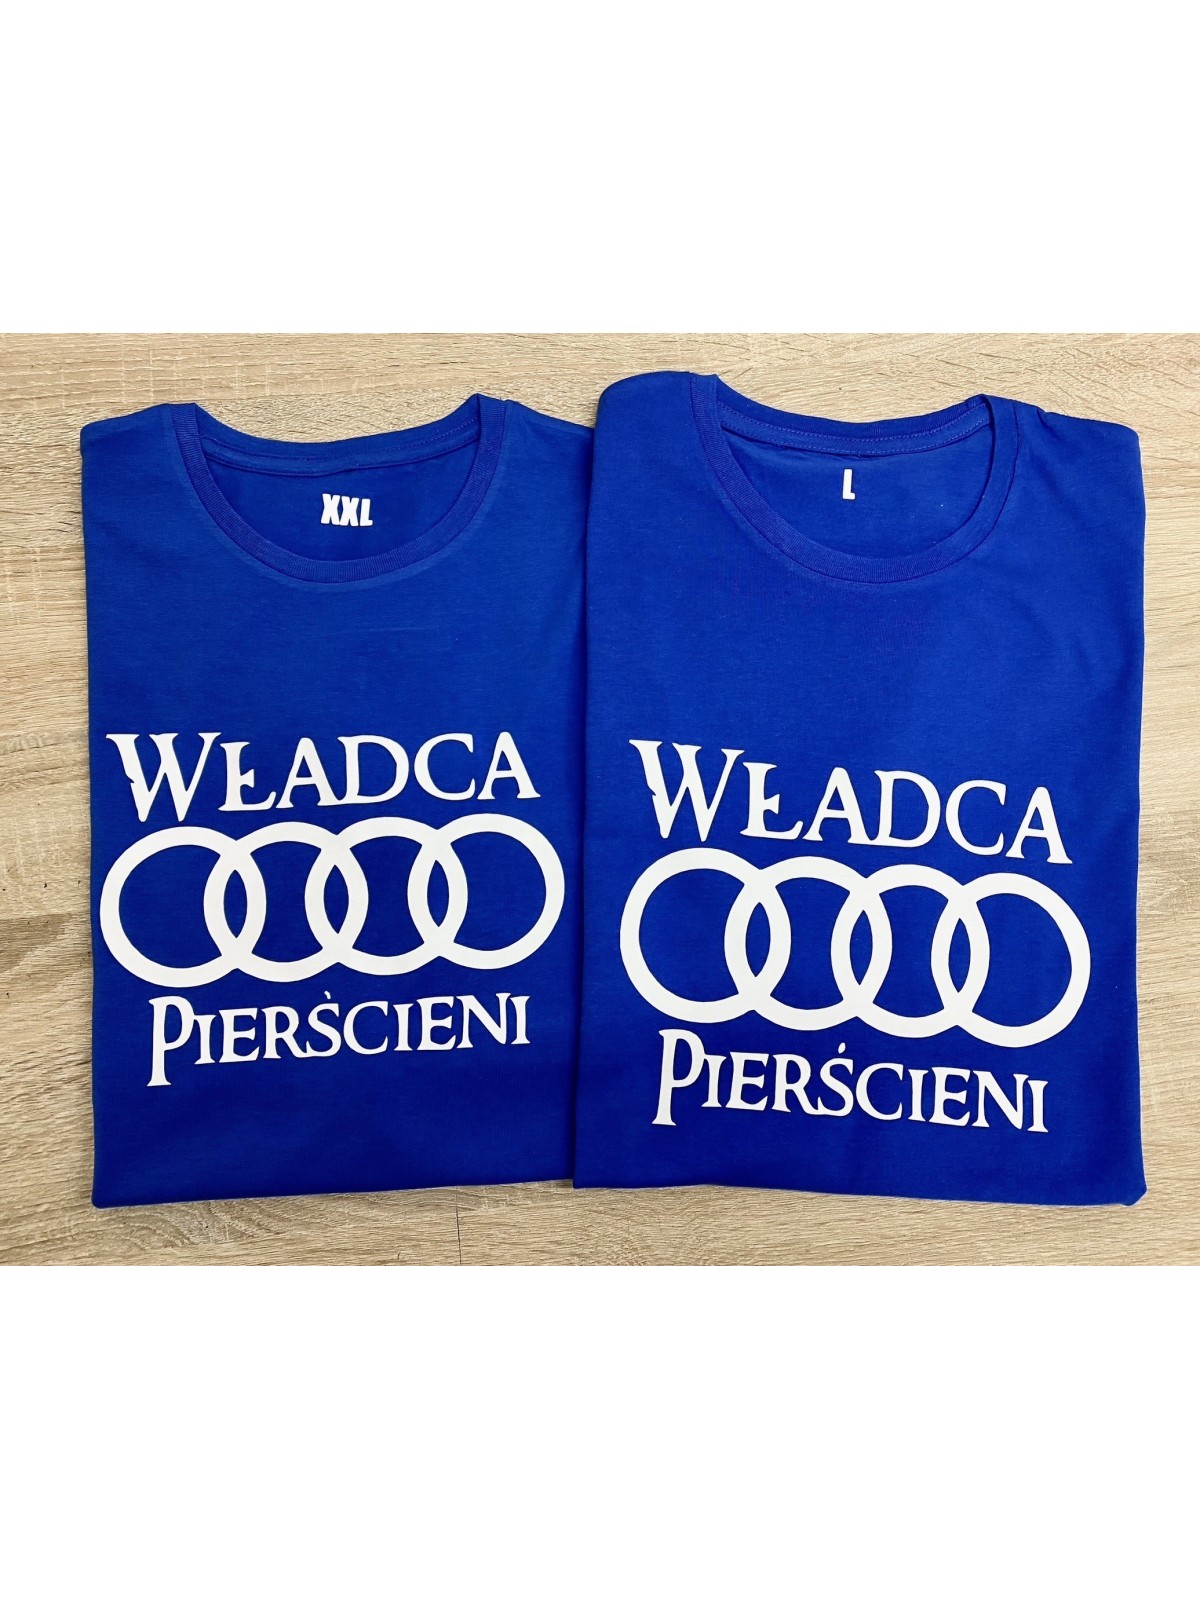 T-shirt Władca Pierścieni logo Audi